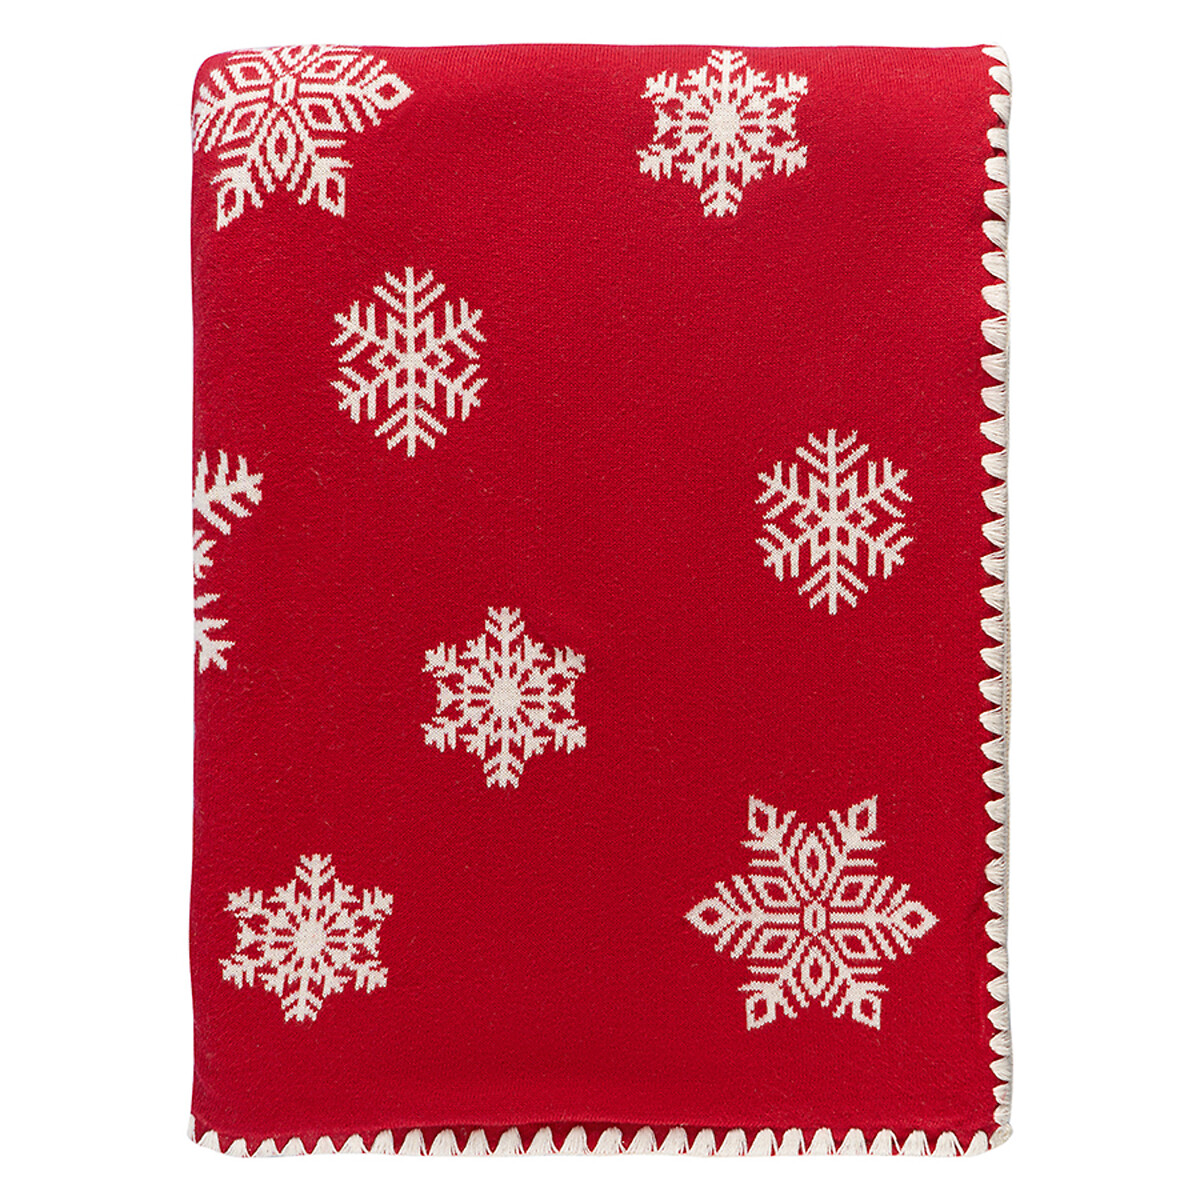 Плед из хлопка с новогодним рисунком Fluffy snowflakes из коллекции New Year Essential 130х180 см  130 x 180 см красный LaRedoute, размер 130 x 180 см